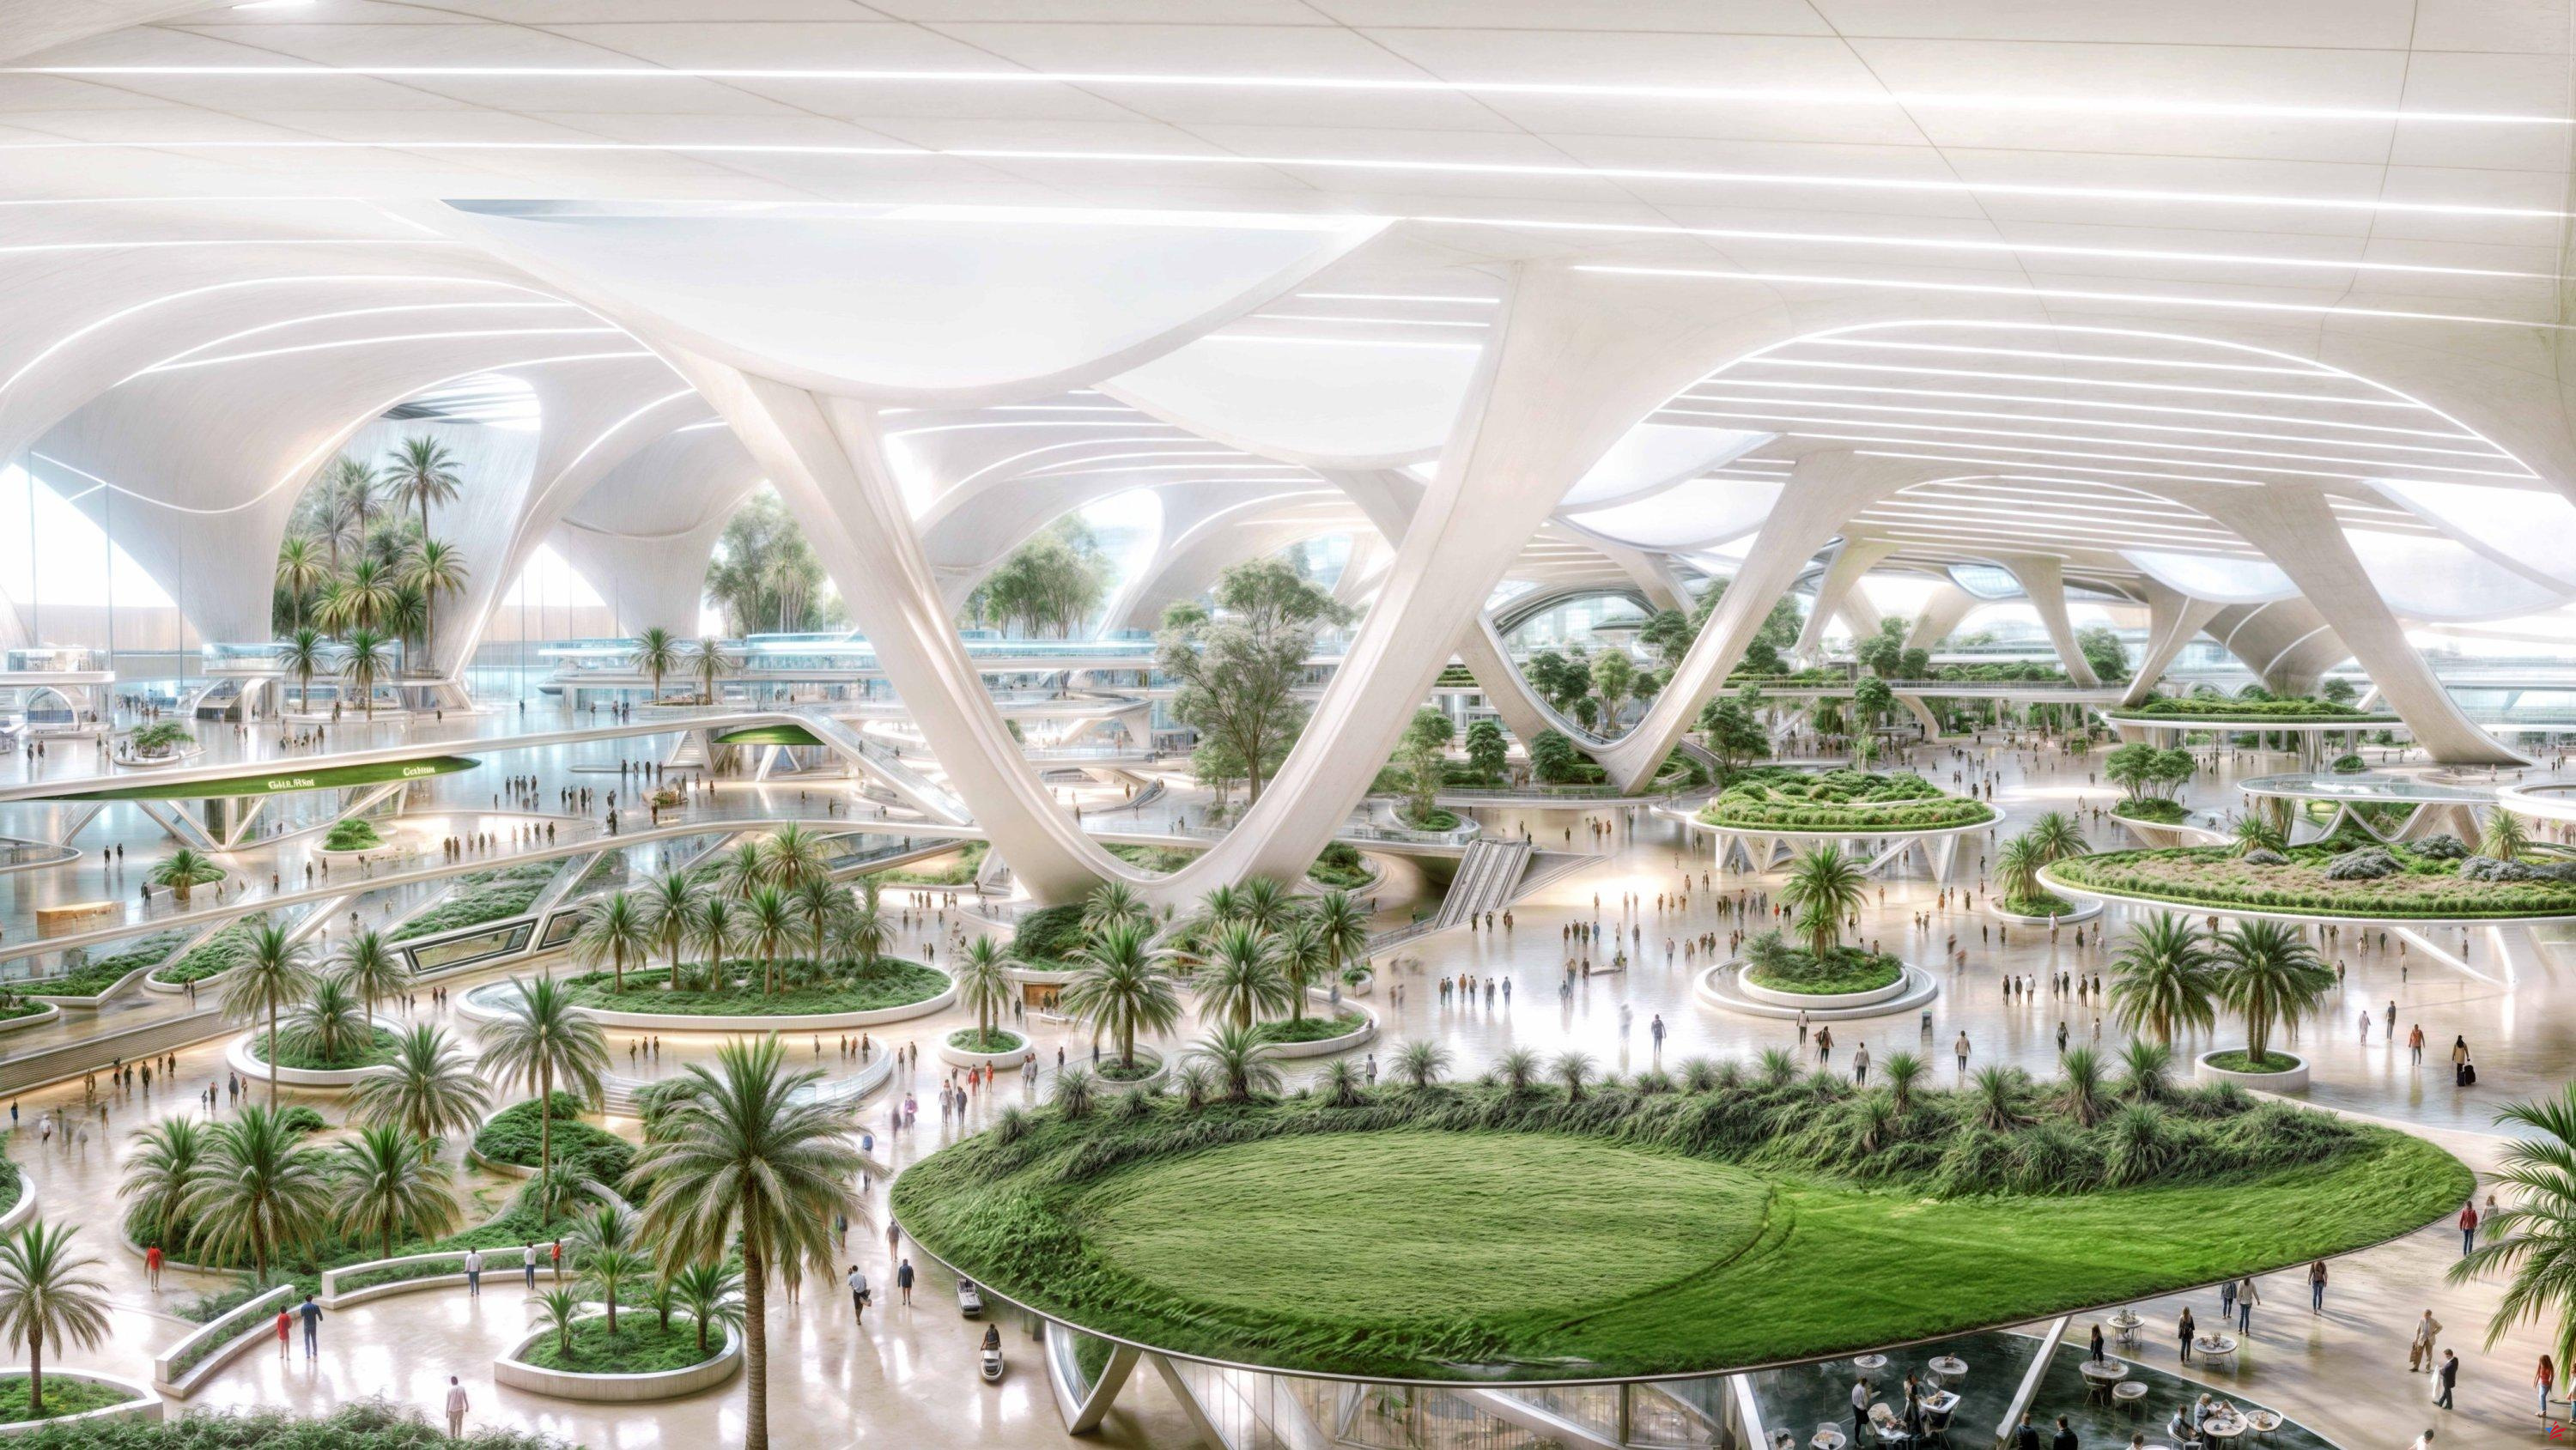 Dubái inicia la transformación de Al-Maktoum para convertirlo en el futuro “aeropuerto más grande del mundo”